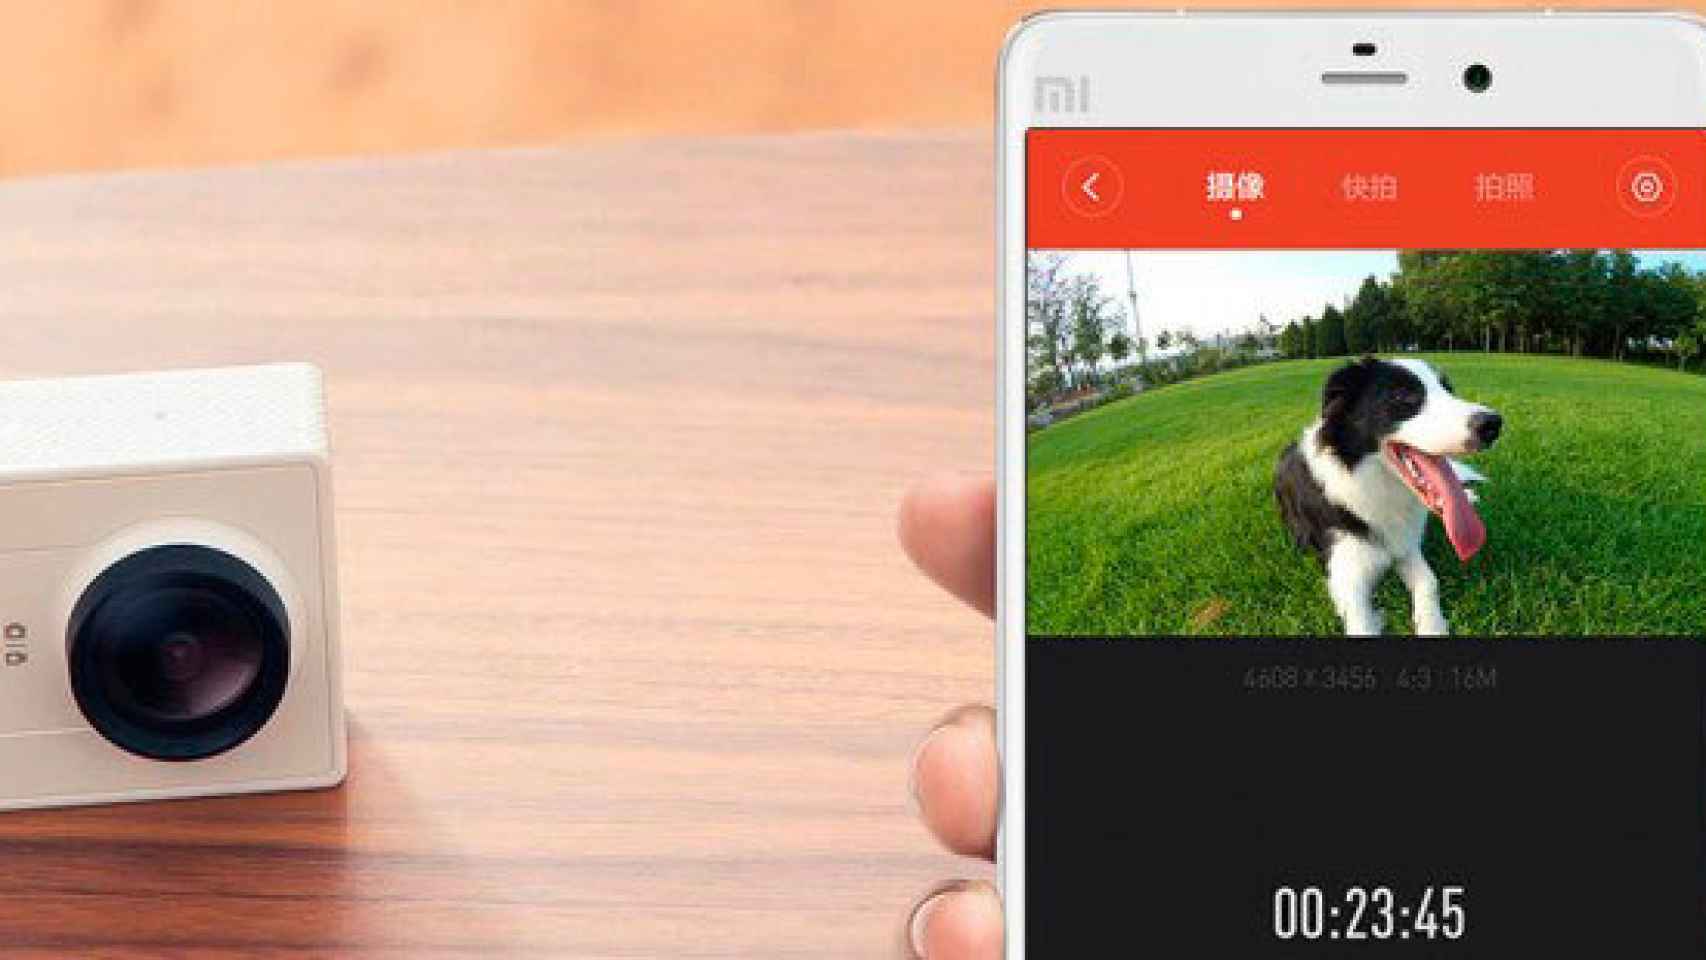 Yi Action Camera: Xiaomi lanza una cámara estilo GoPro por sólo 57€